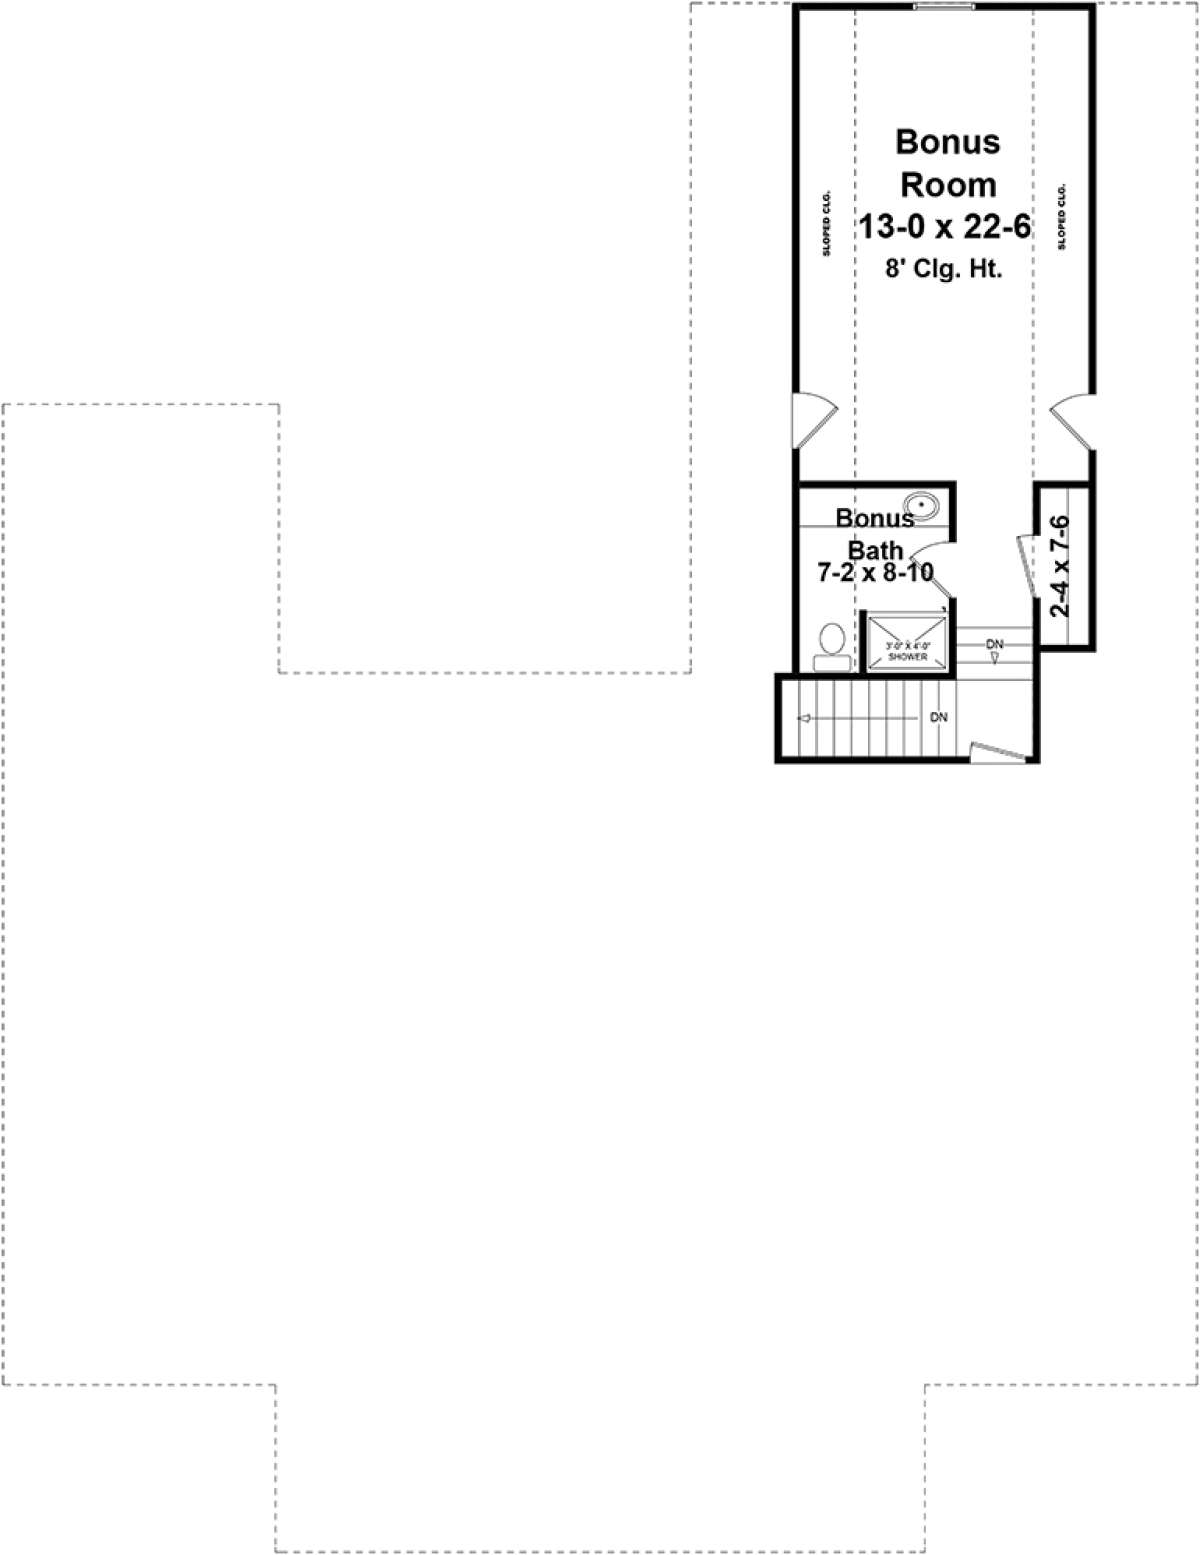 Bonus Room/Second Floor for House Plan #348-00280